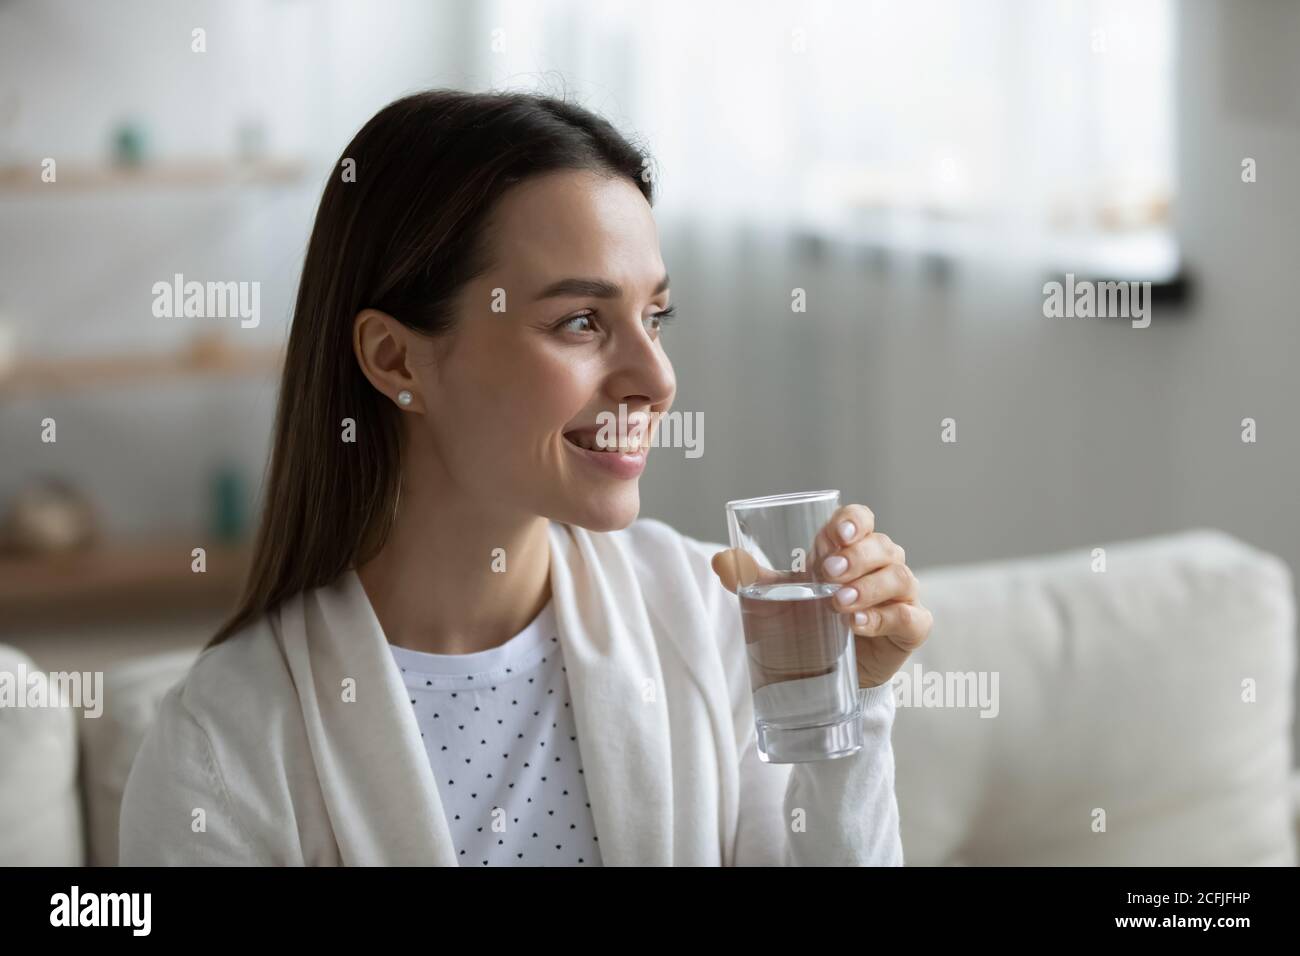 Lächelnd hübsches junges Mädchen, das Glas reines Süßwasser hält. Stockfoto